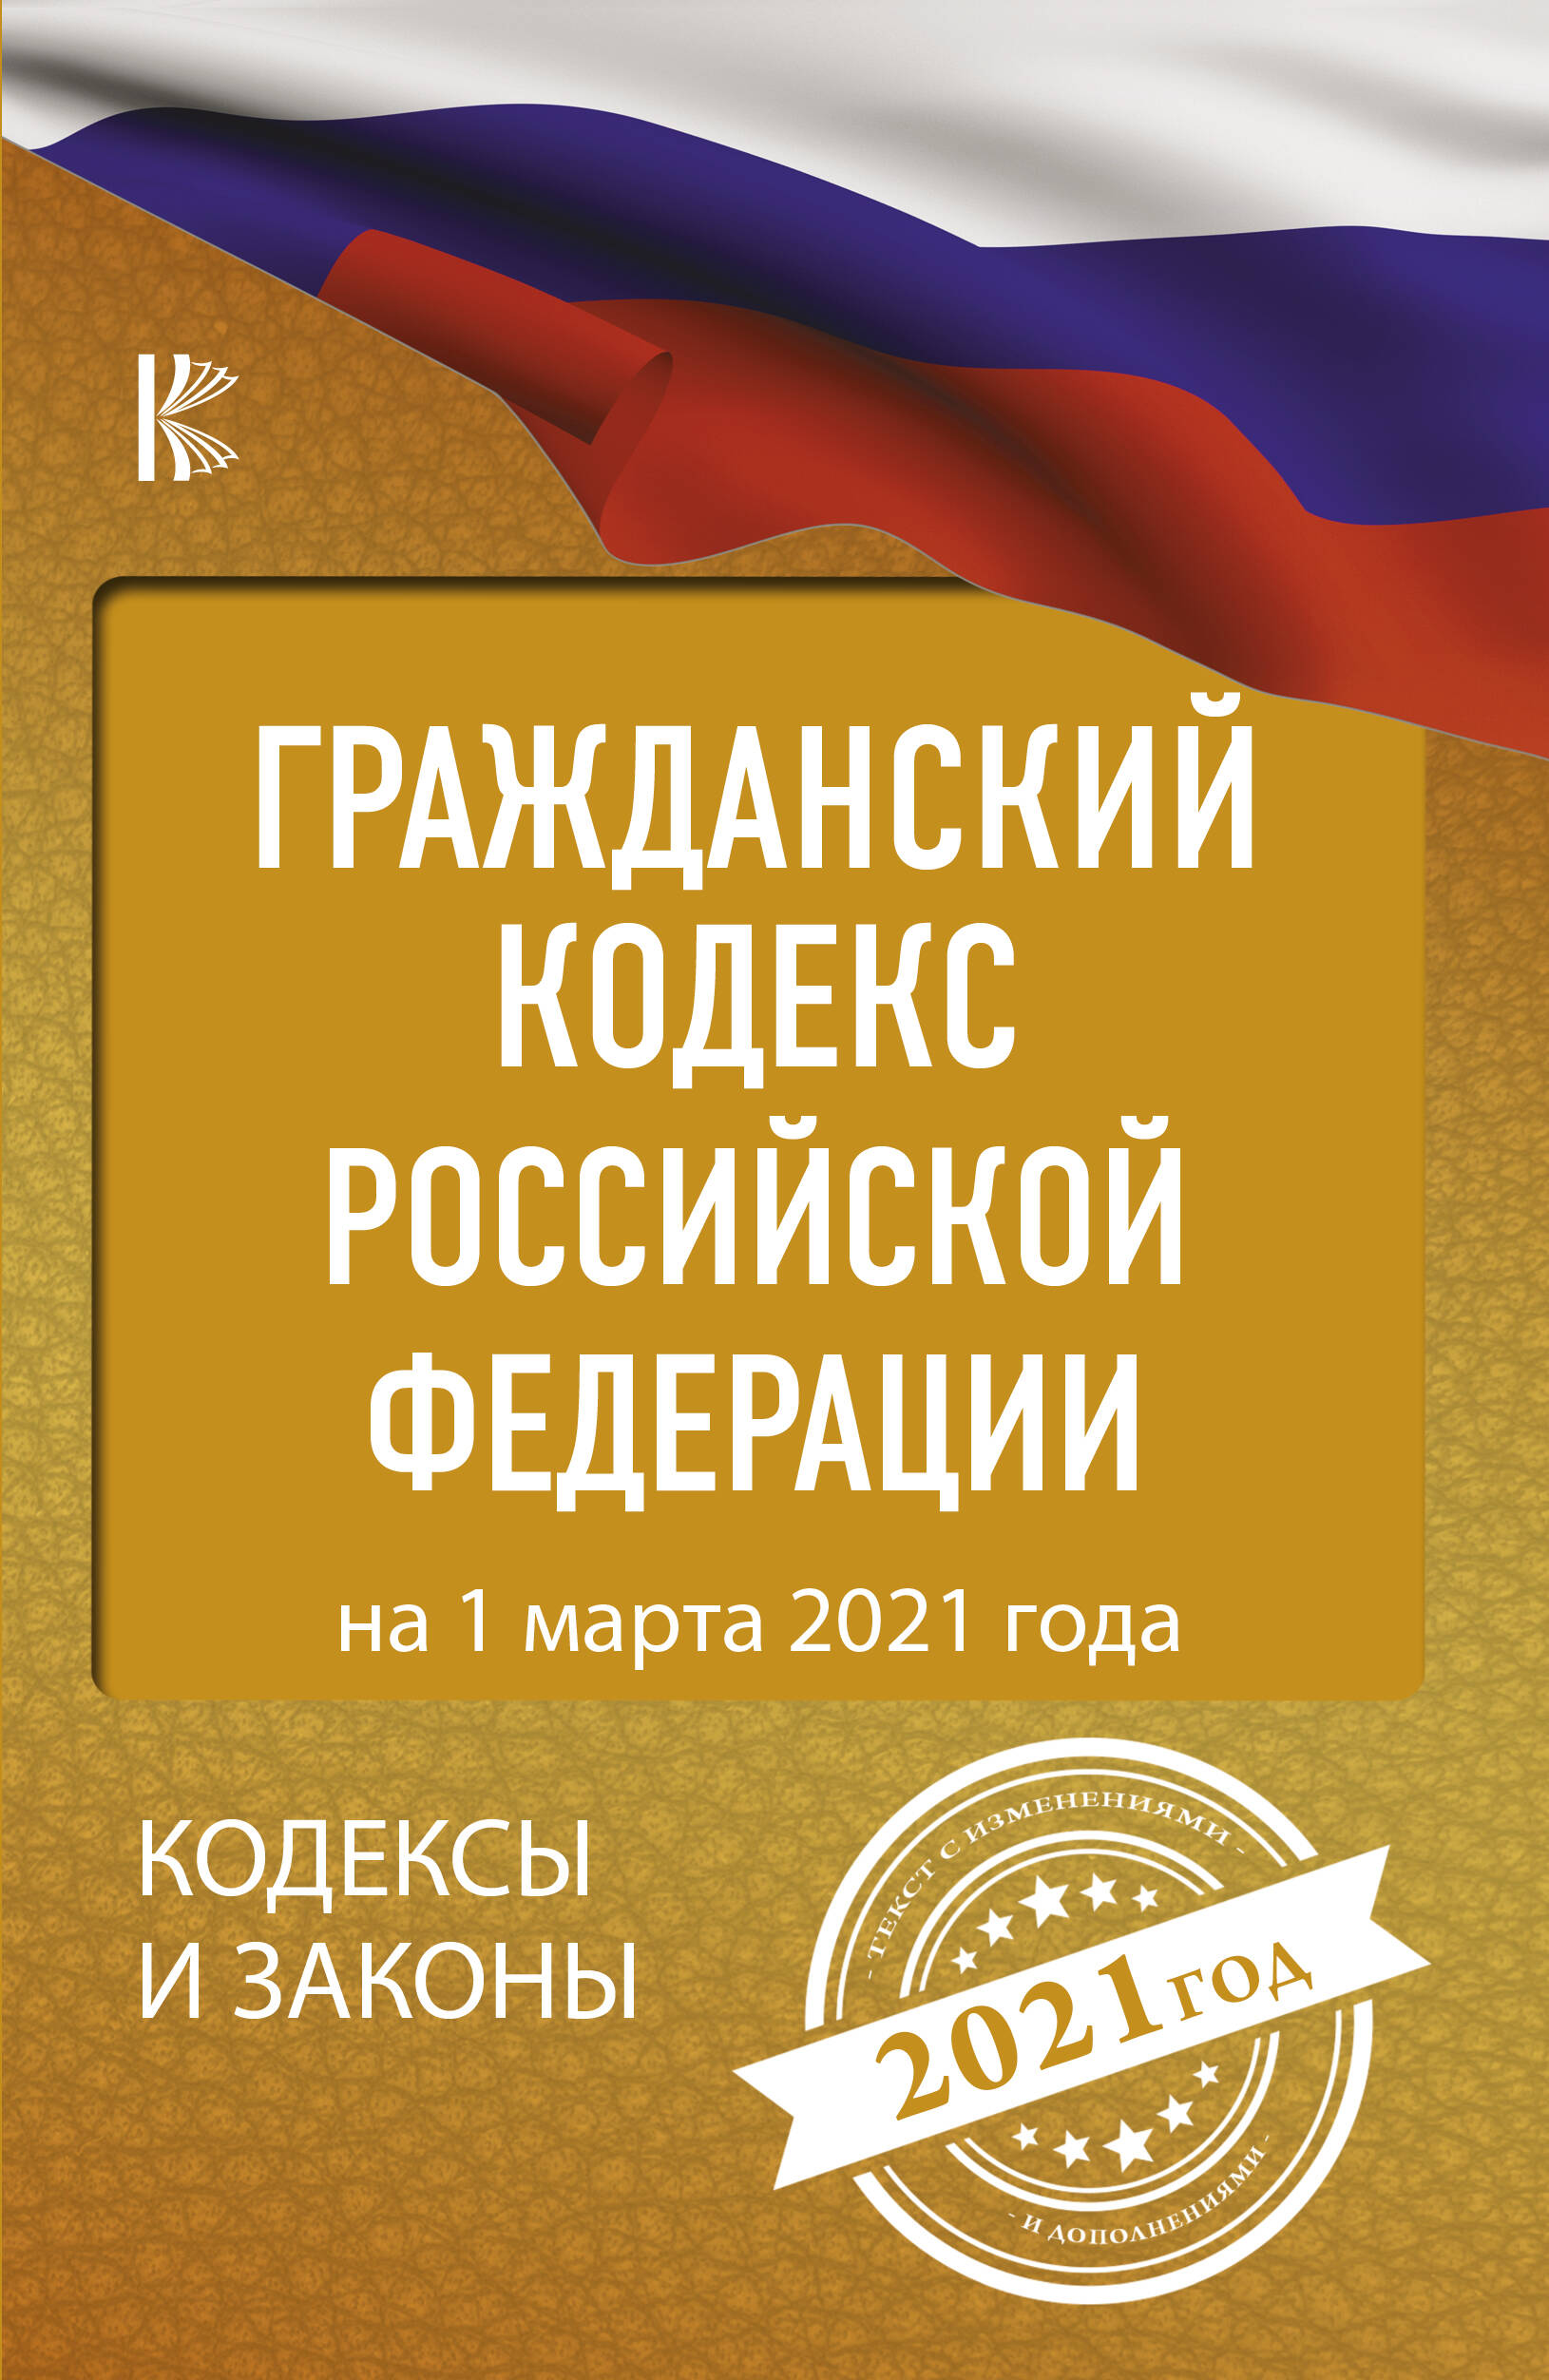  Гражданский Кодекс Российской Федерации на 1 марта 2021 года - страница 0